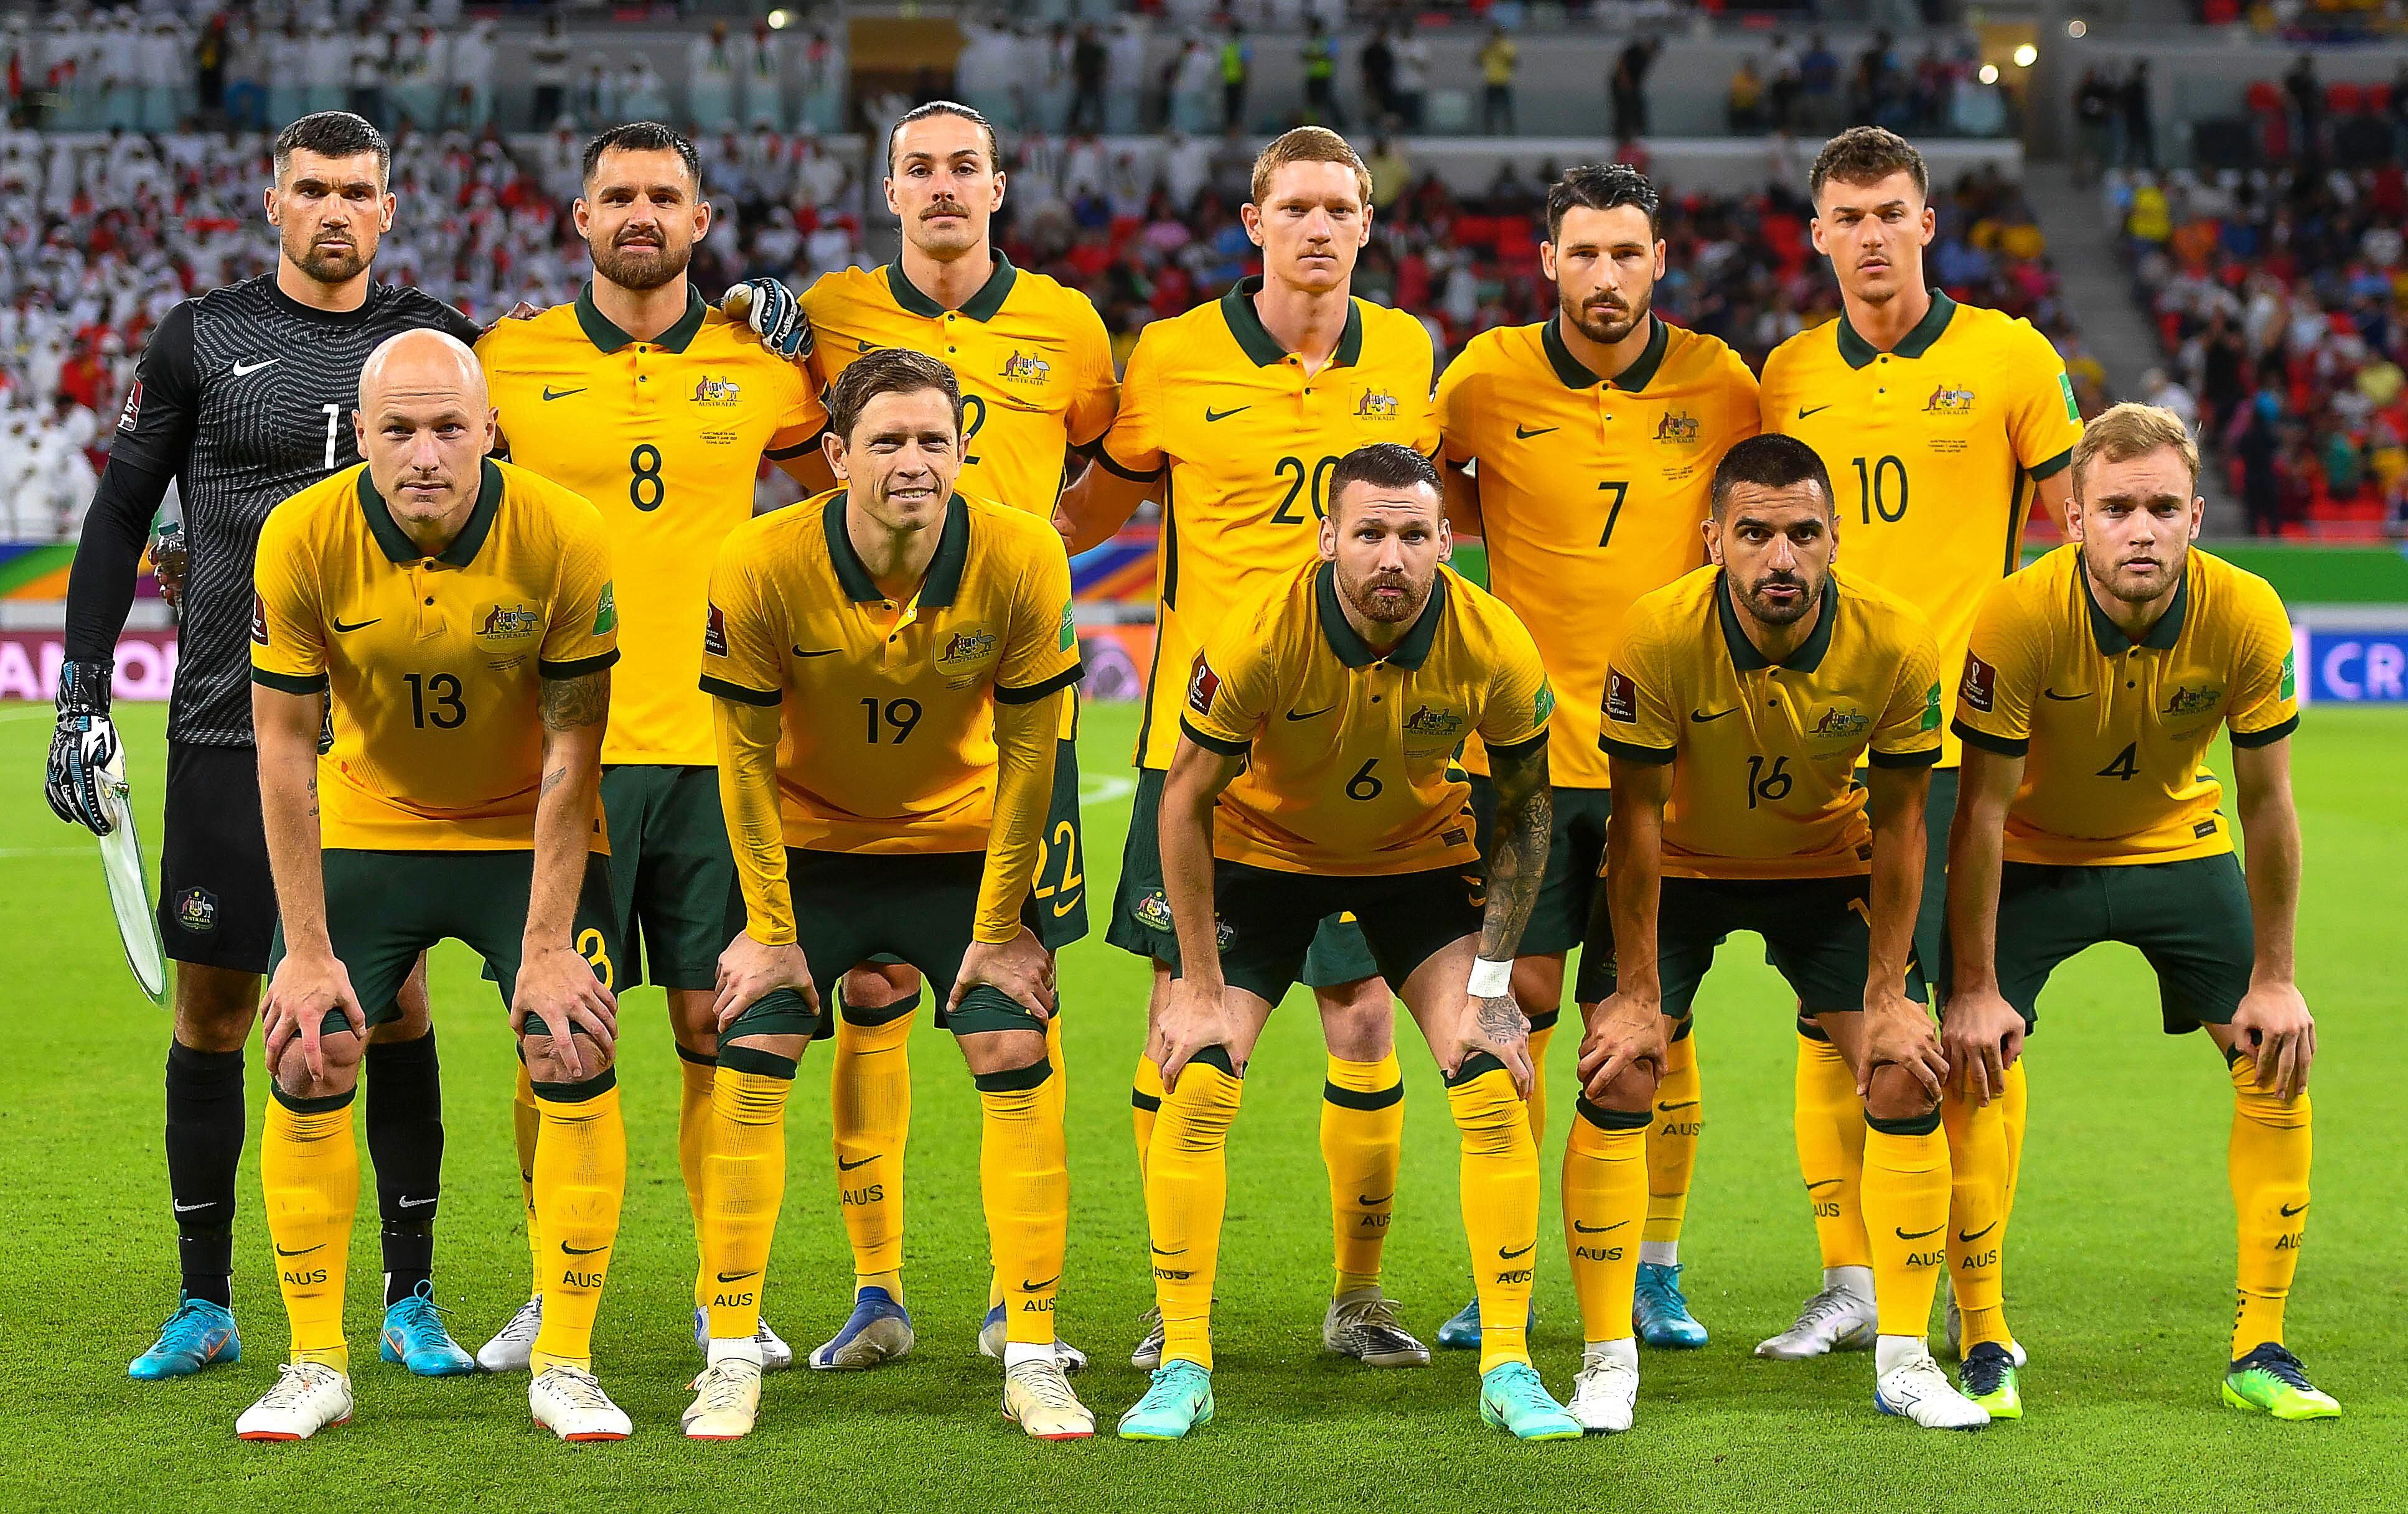 Craque da Austrália na Copa do Mundo se passou por menino para jogar  futebol na infância